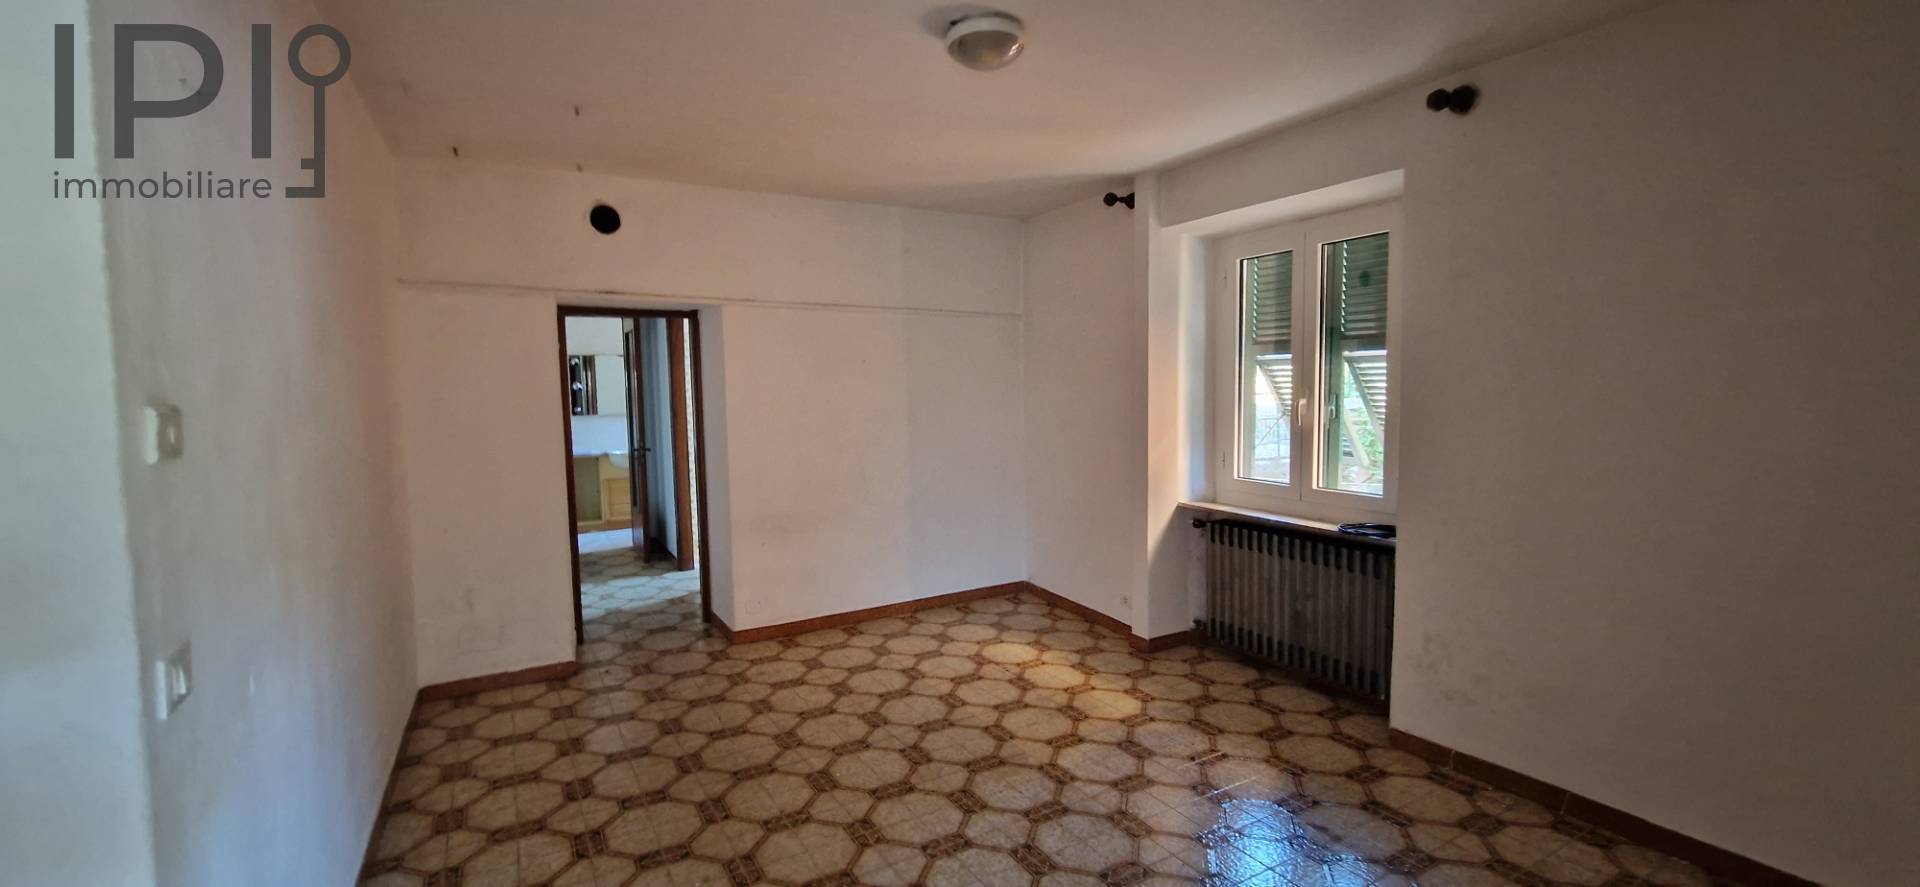 Appartamento in vendita a Pallare, 4 locali, prezzo € 42.000 | PortaleAgenzieImmobiliari.it